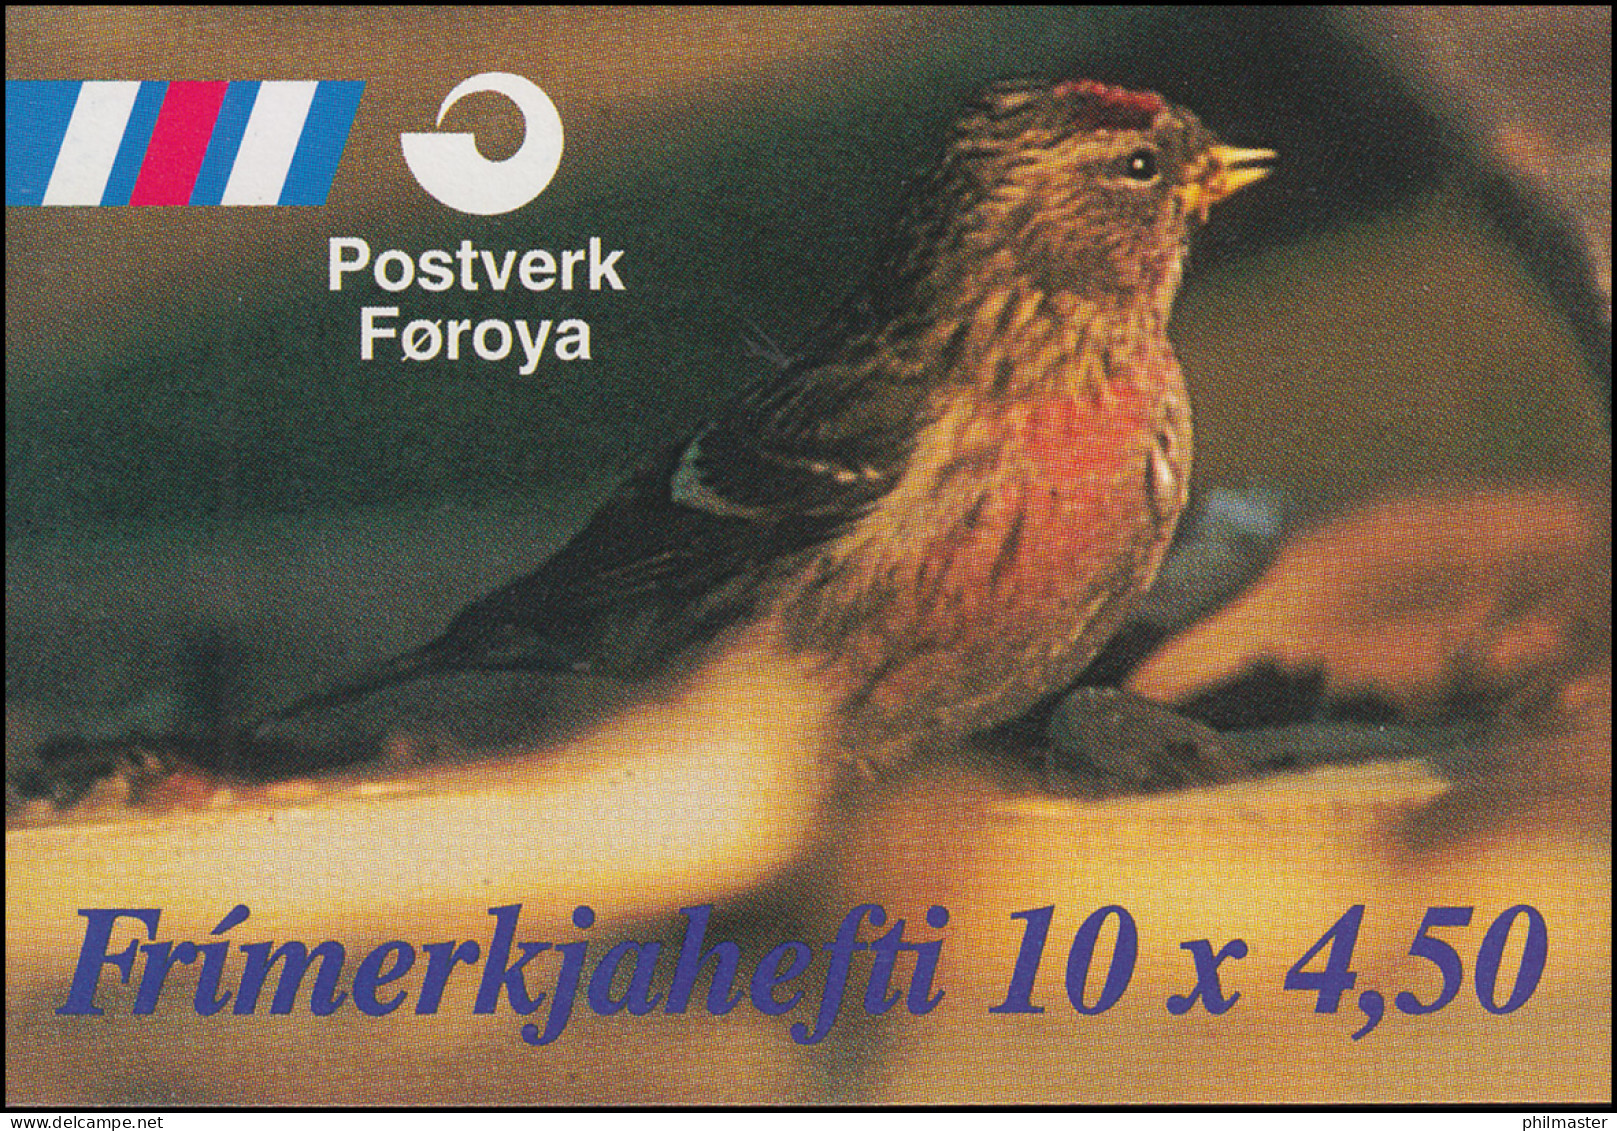 Färöer-Inseln Markenheftchen 13 Invasionsvögel Birds 1997, ** Postfrisch - Färöer Inseln